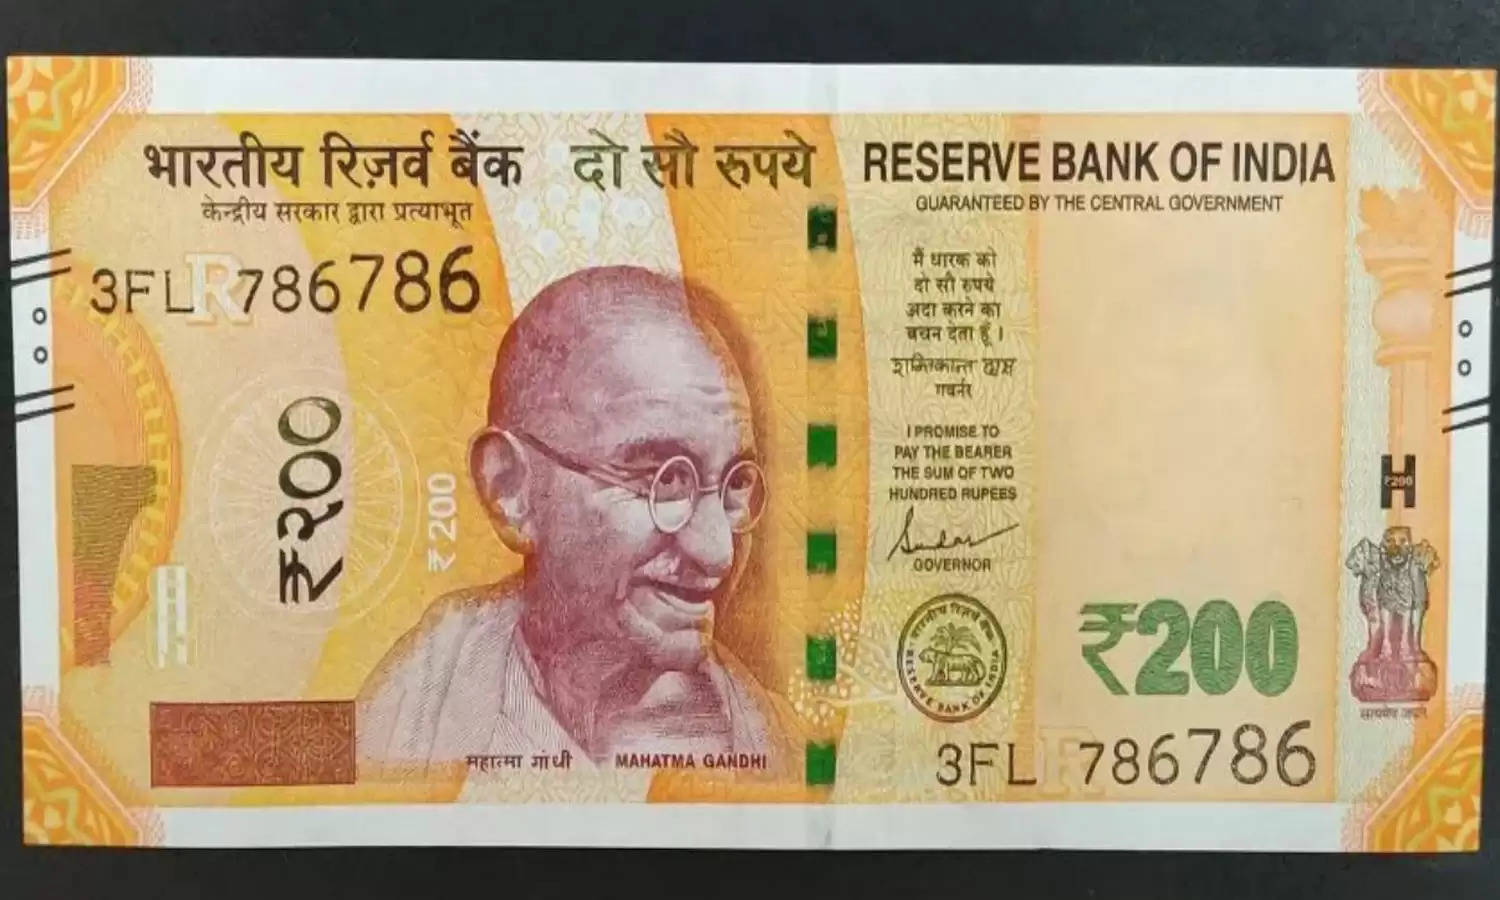 ये 200 रुपये का नोट है लखपति बनने की लॉटरी टिकट, मिनटों में घर बैठे आ जाएंगे पैसे, जानें कैसे?